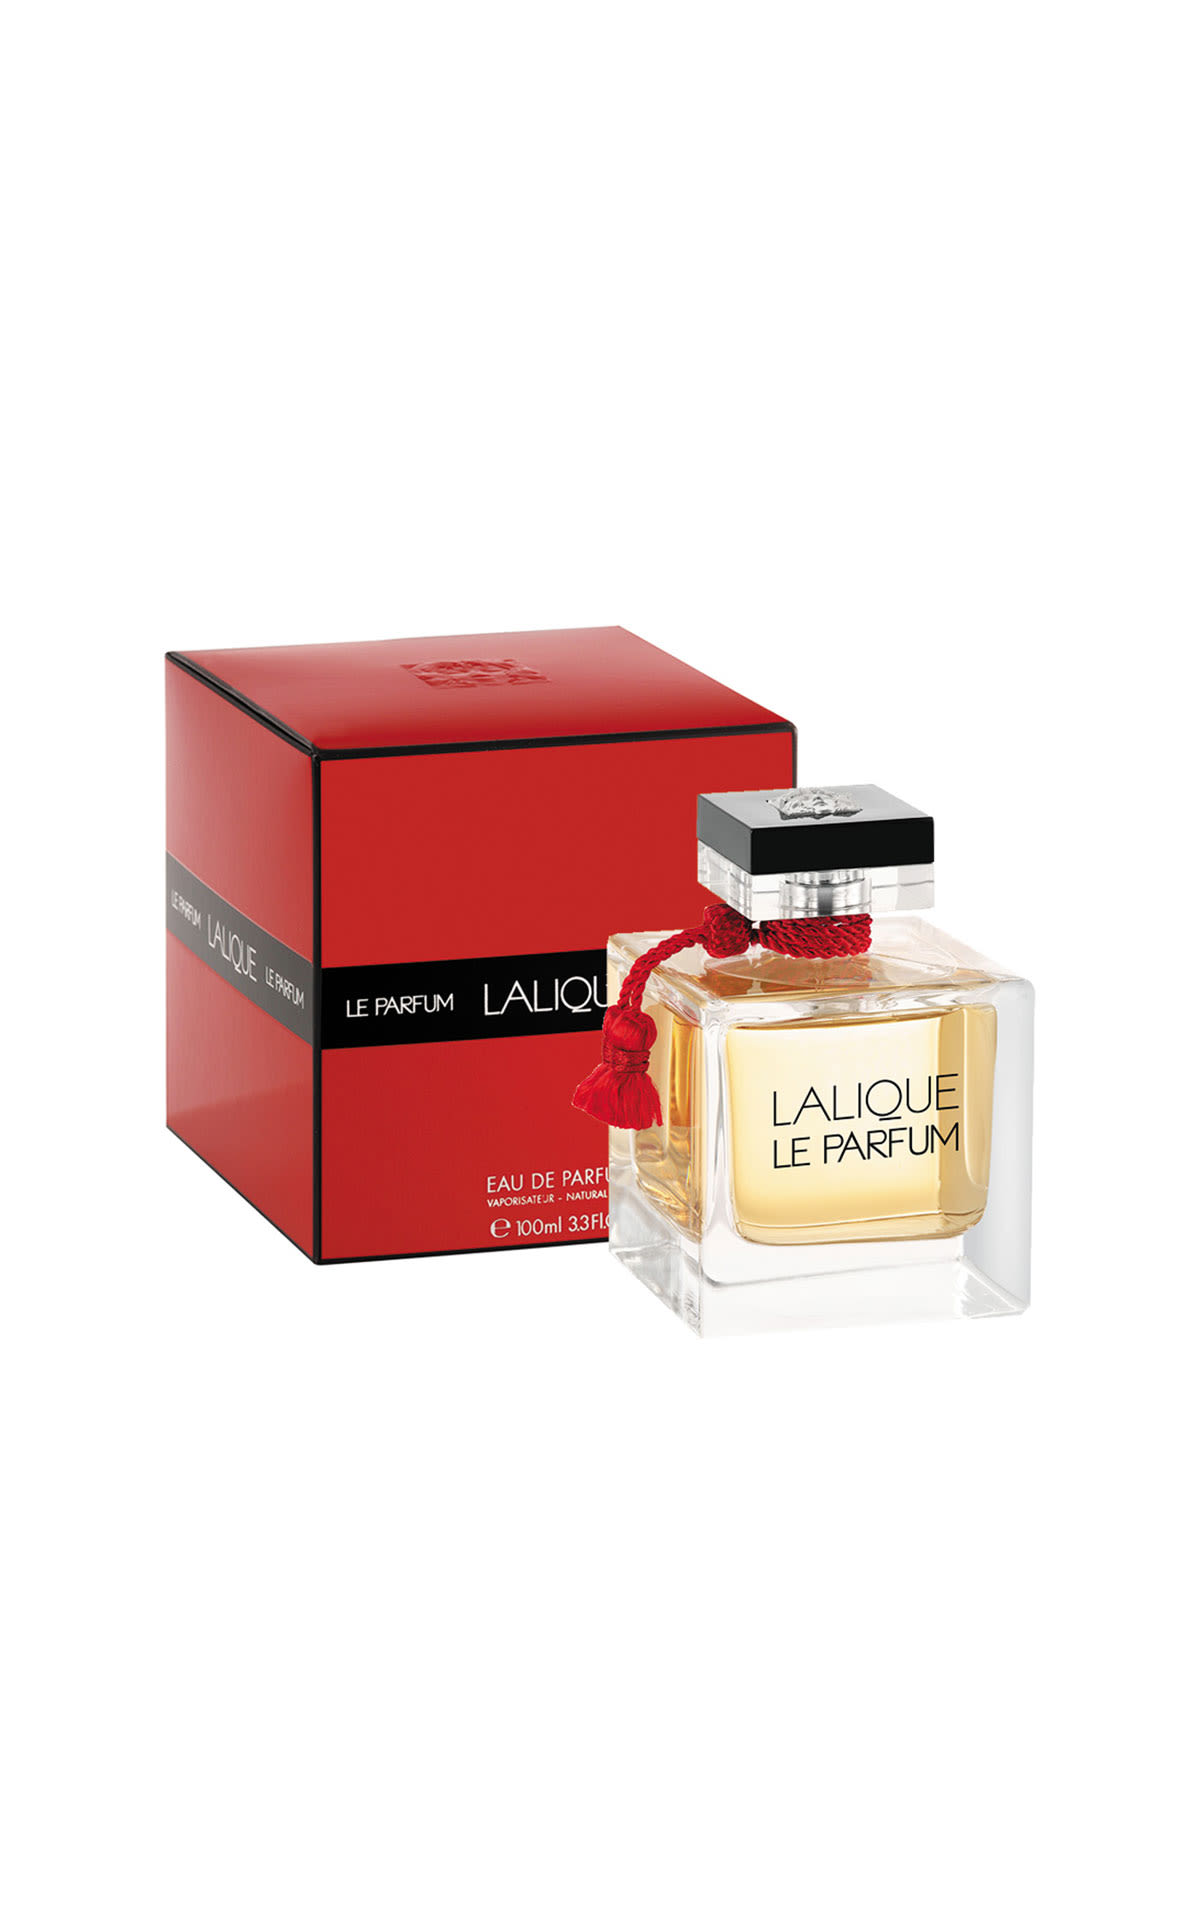 Lalique Lalique le parfum 100ml from Bicester Village